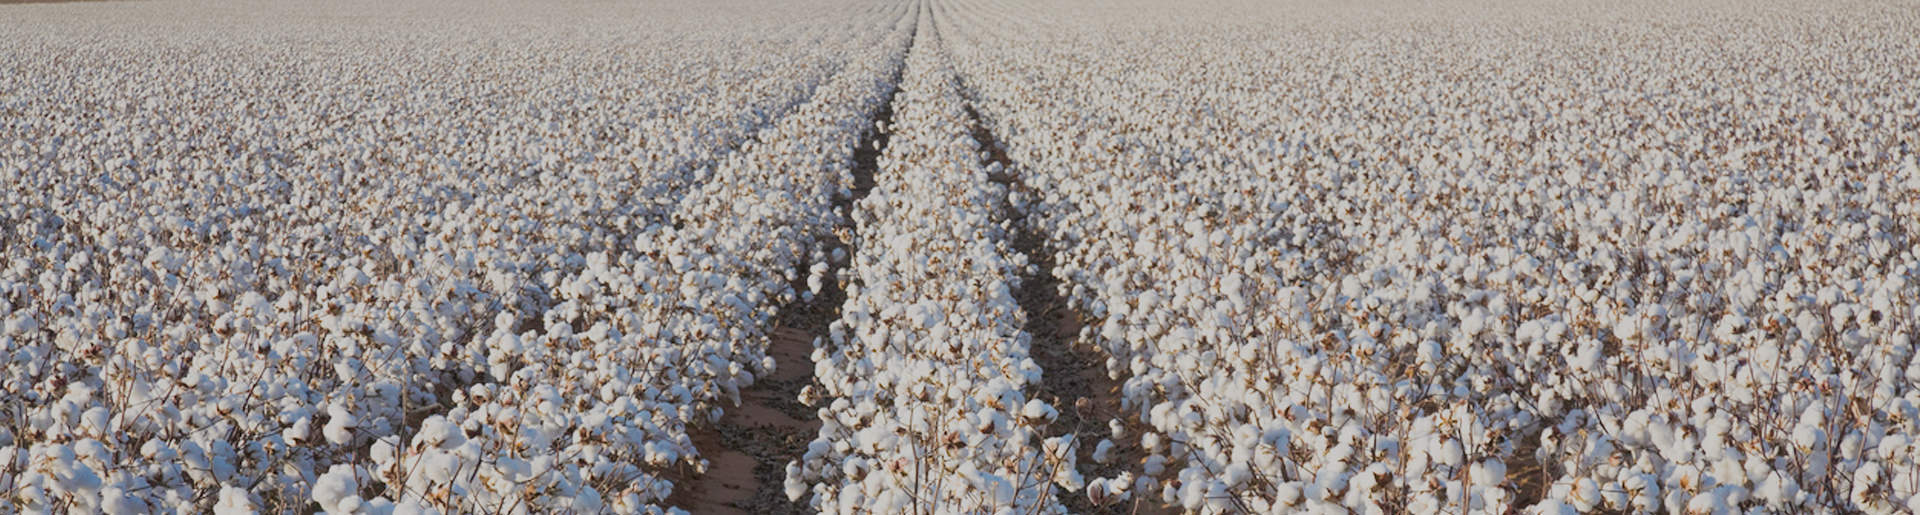 Melawear Unternehmen Baumwolle plantage in Indien groß